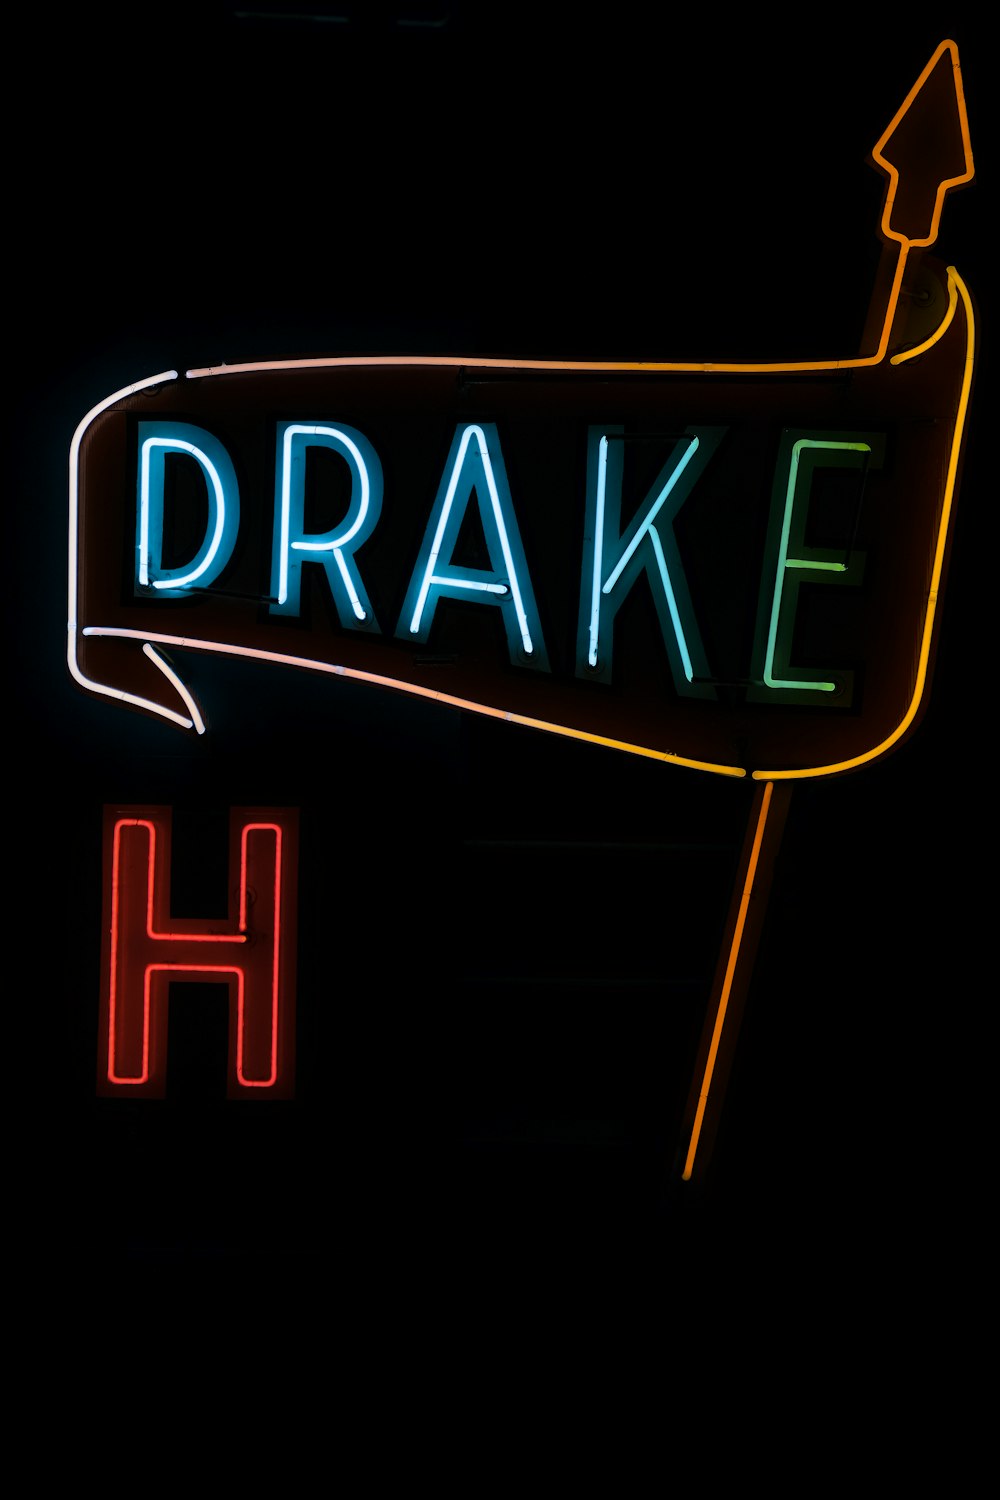 Drake LED signage